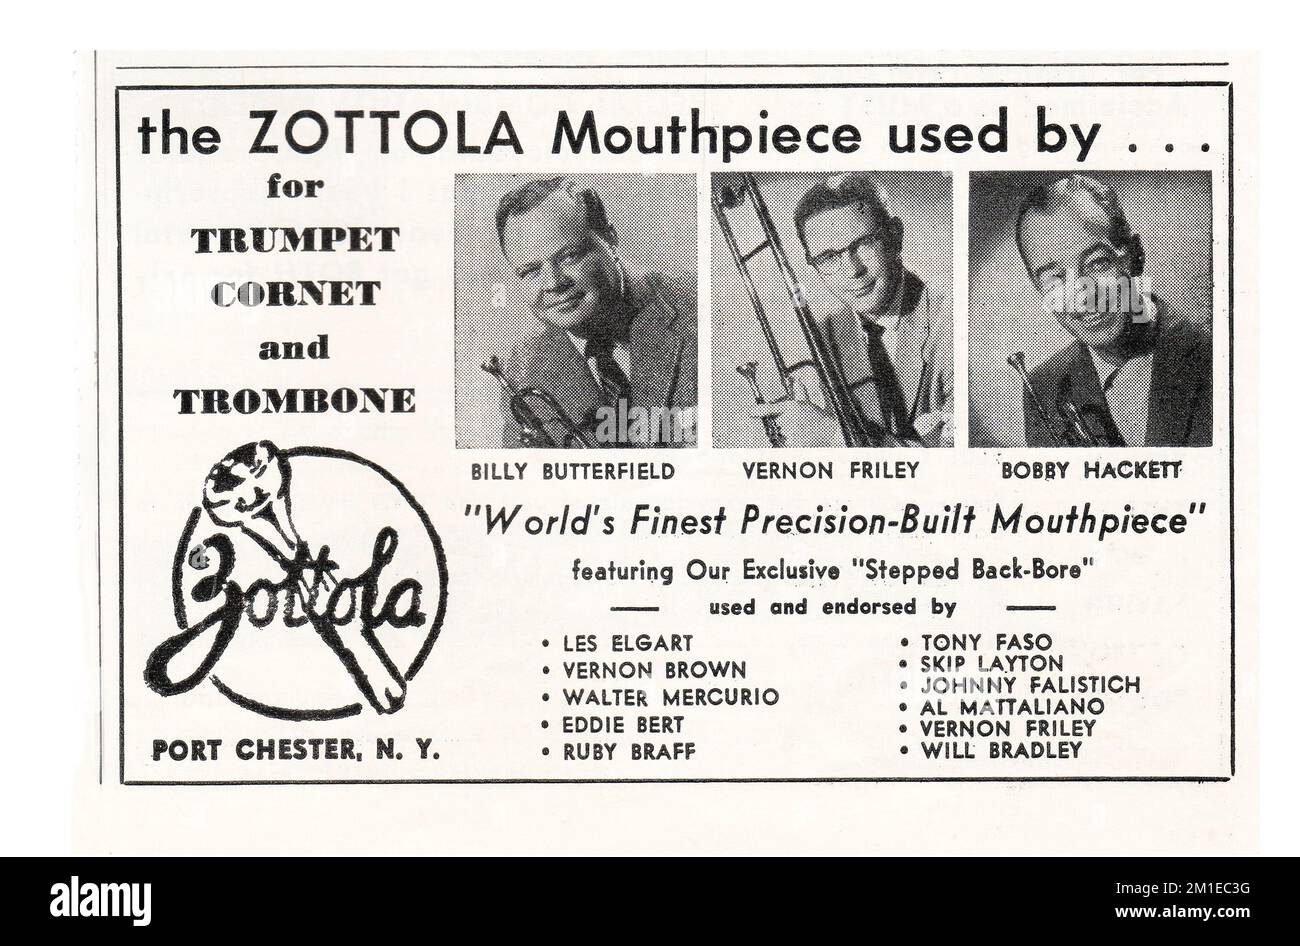 Una pubblicità per i boccagli di Zottola con 3 musicisti jazz caucasici - Billy Butterfield, Vernon Riley & Bobby Hackett. Da una rivista musicale del 1950s. Foto Stock